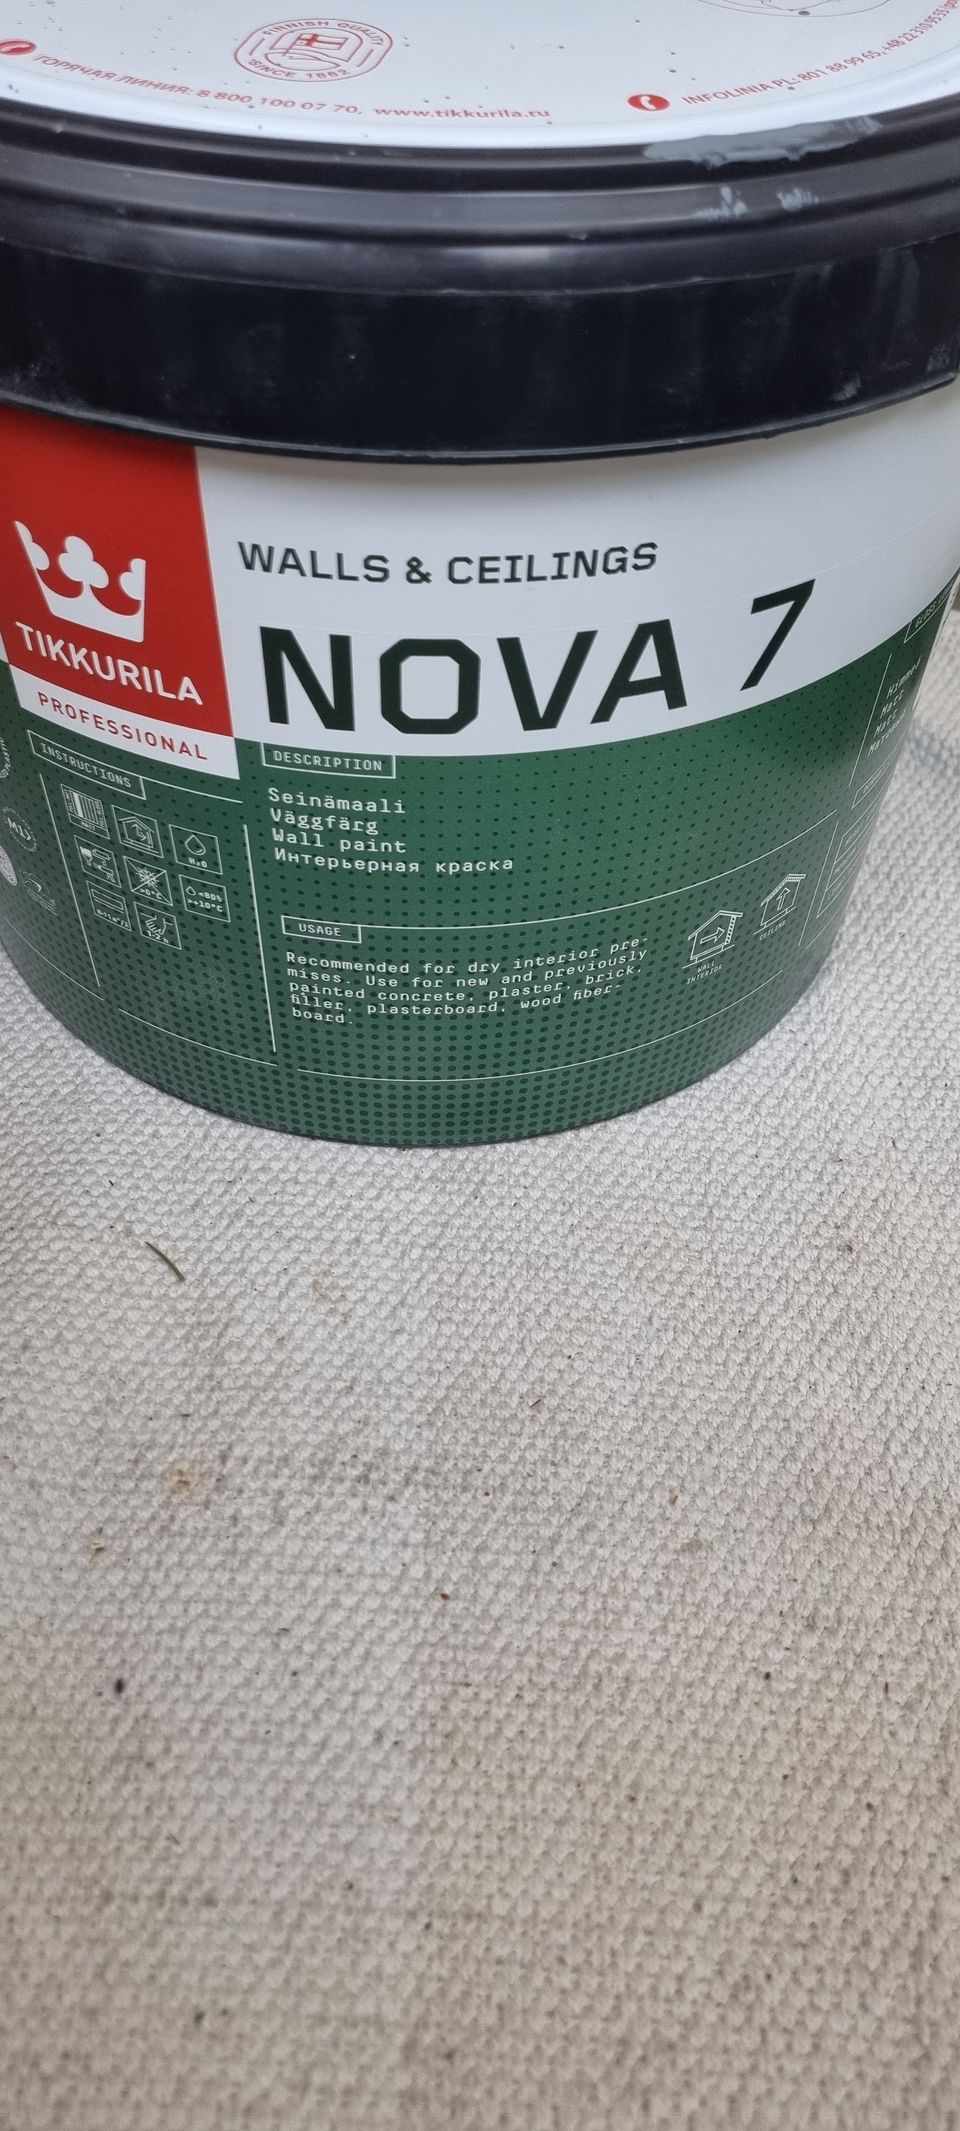 Myydään Nova 7 TVT S500 sisäämaalia!